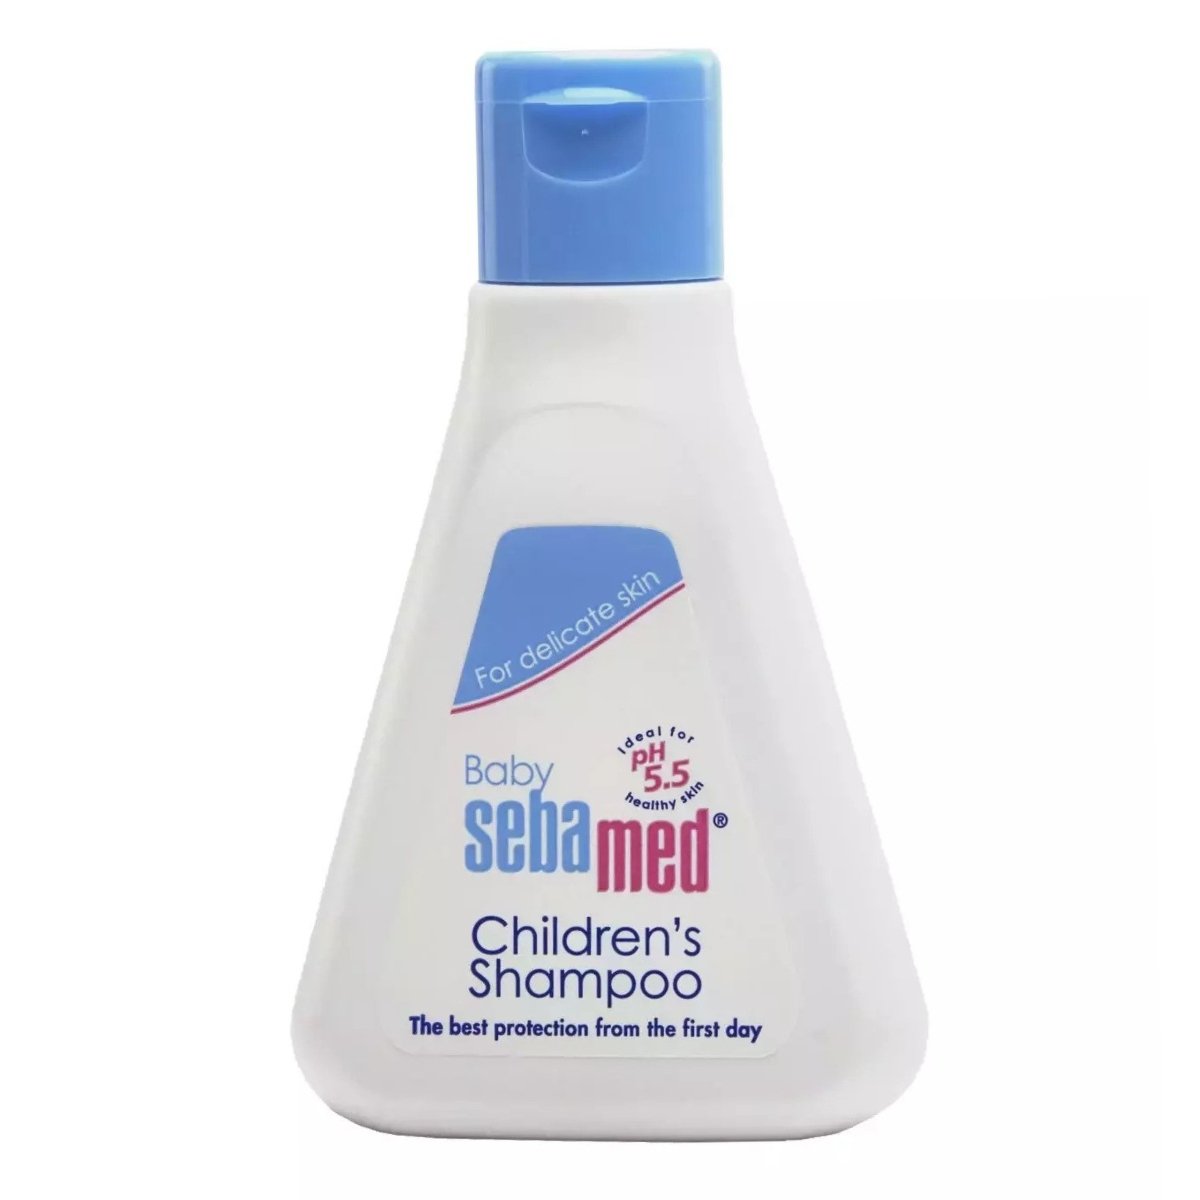 SebaMed Children’s Shampoo  (50 ml) SebaMed Baby